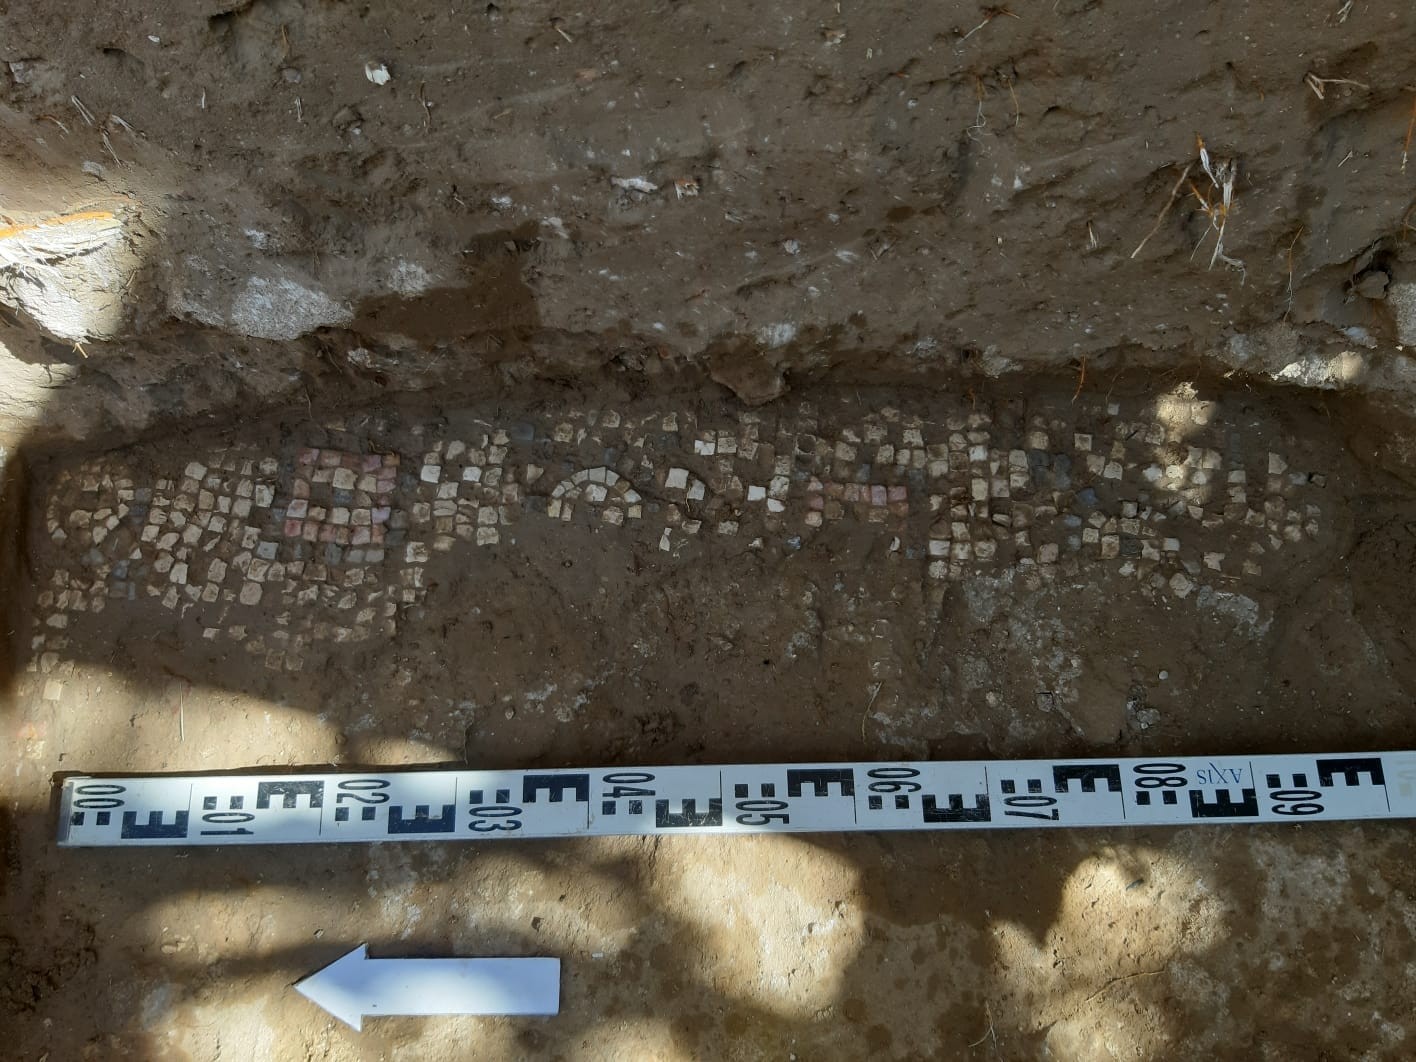 مزارع فلسطيني من البريج في غزة يكتشف وجود لوحة فسيفسائية مزخرفة تعود للعهد البيزنطي 66.jpg